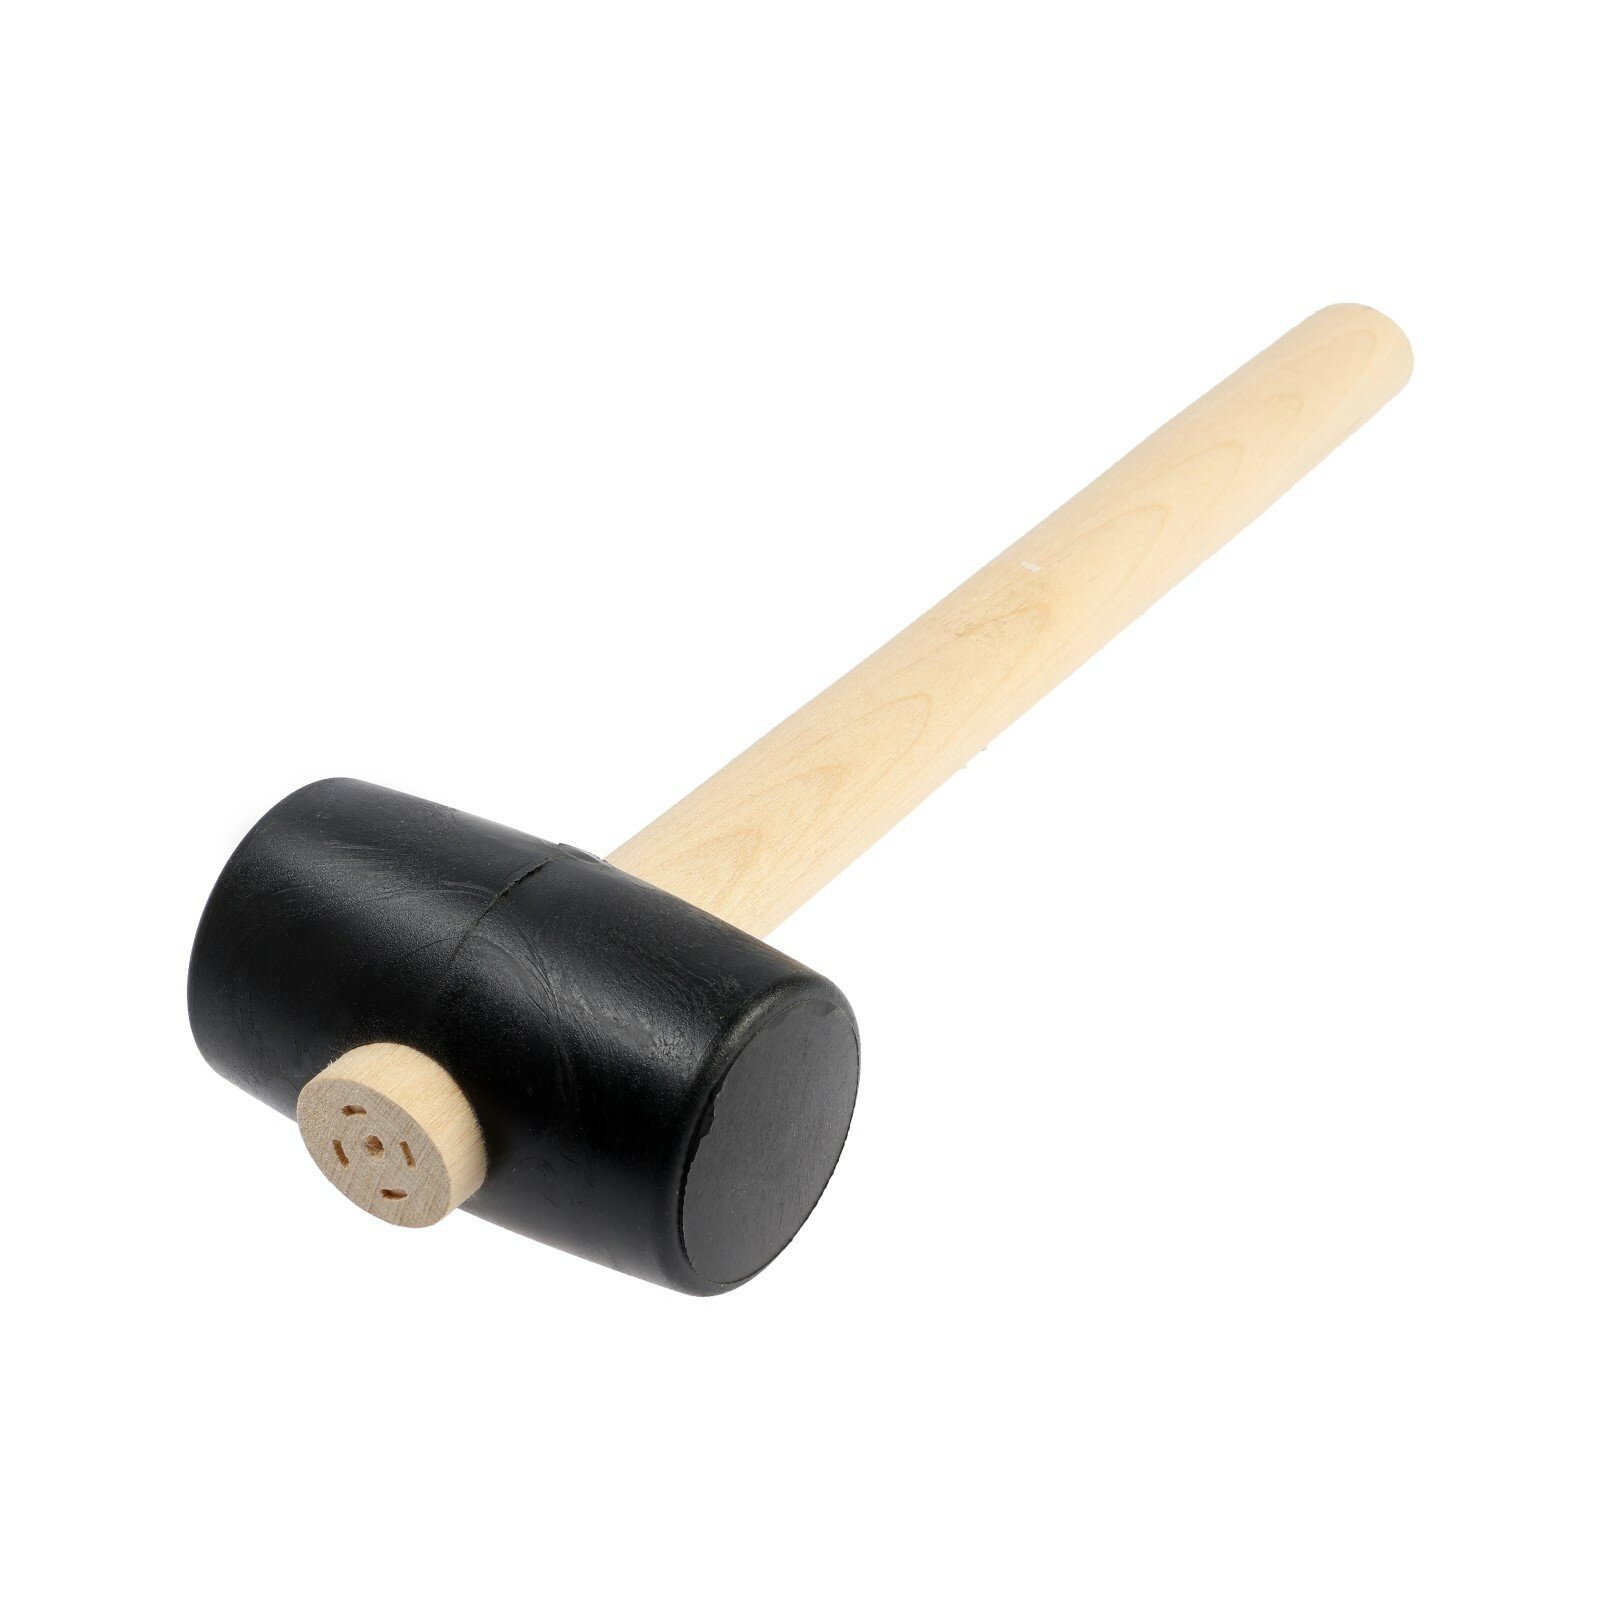 Киянка, деревянная рукоятка, черная резина, 50 мм, 250 г